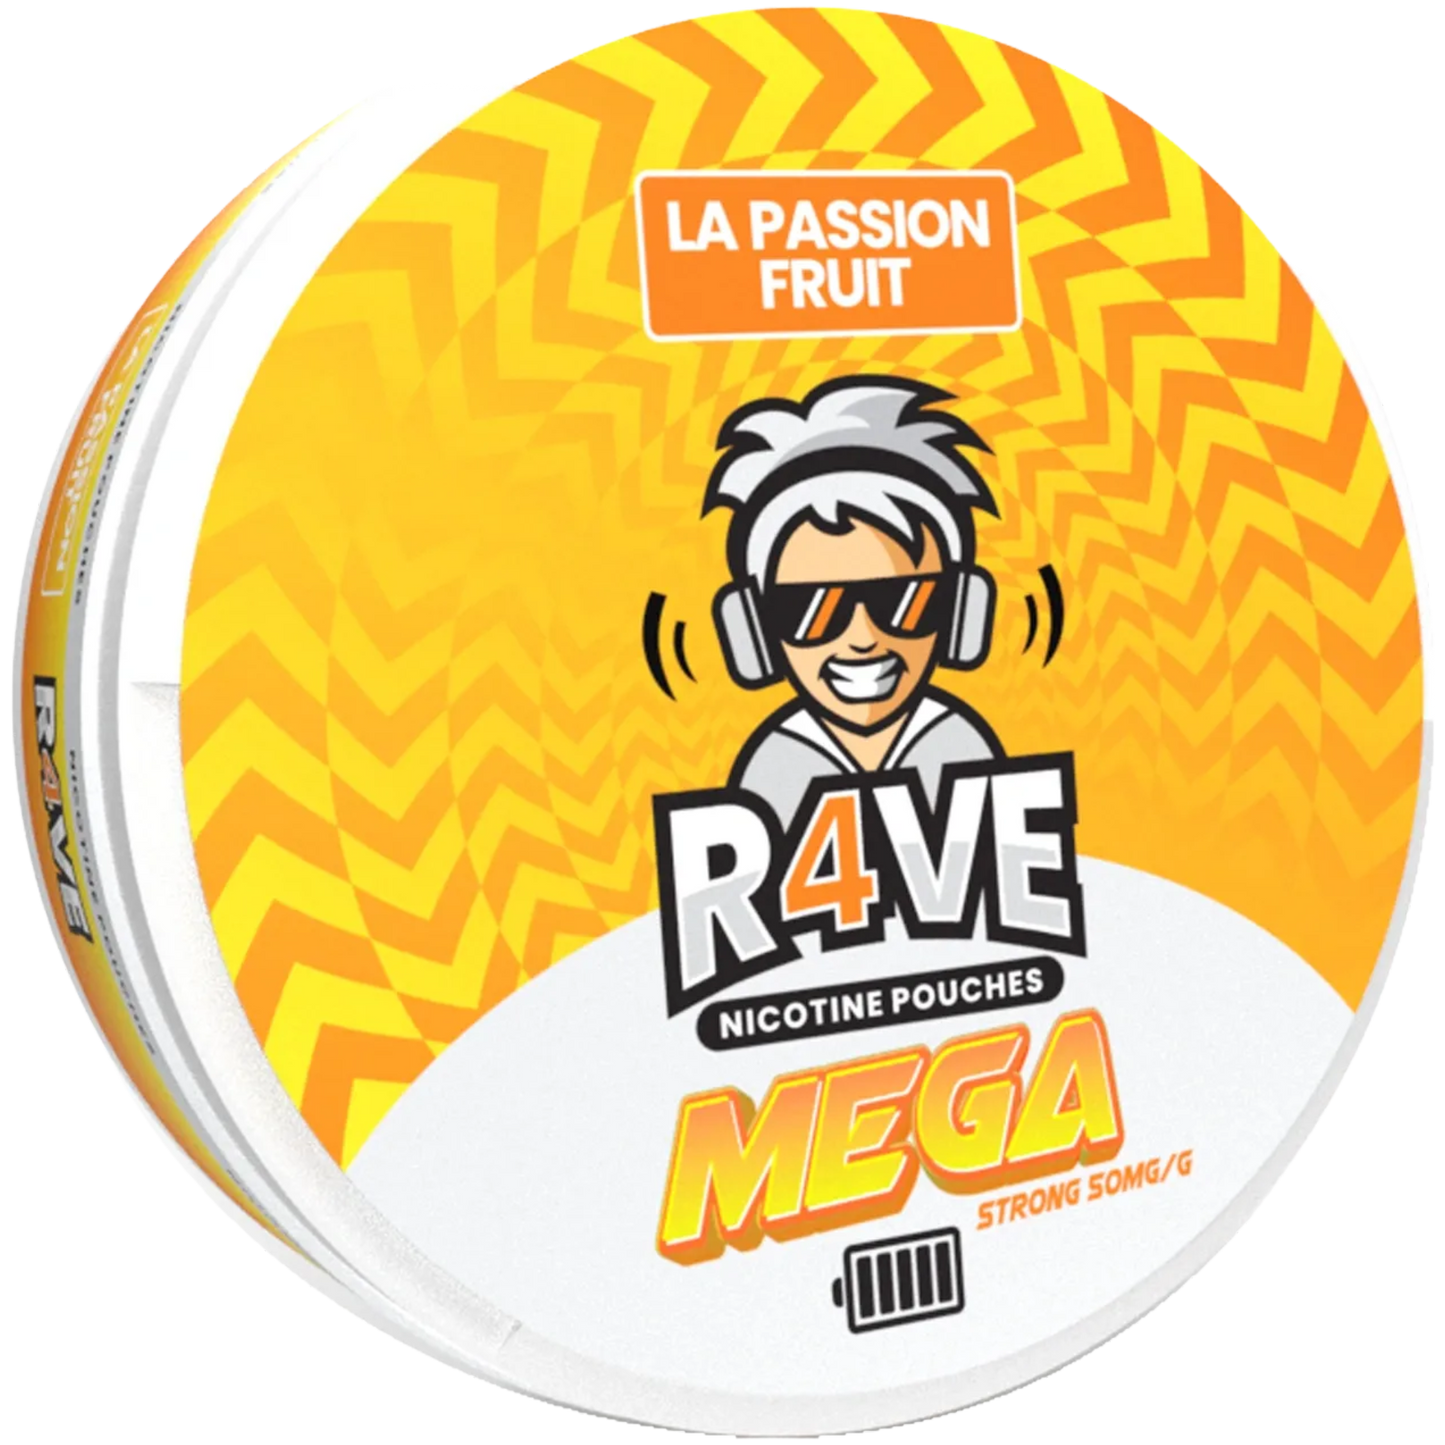 Rave La Passion Fruit - 20mg